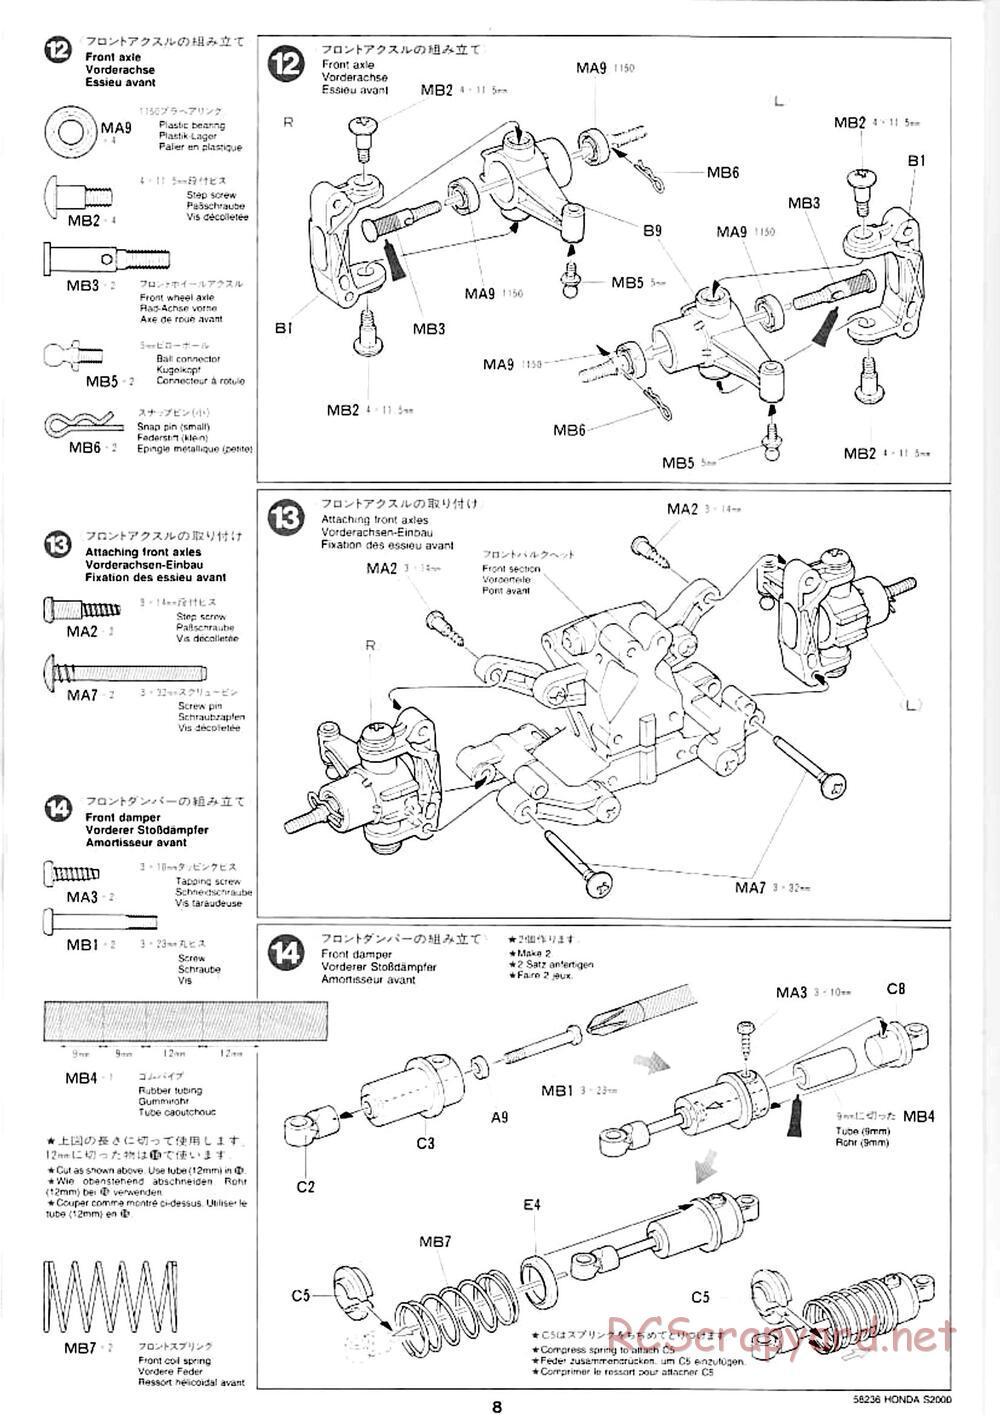 Tamiya - Honda S2000 - M04L Chassis - Manual - Page 6